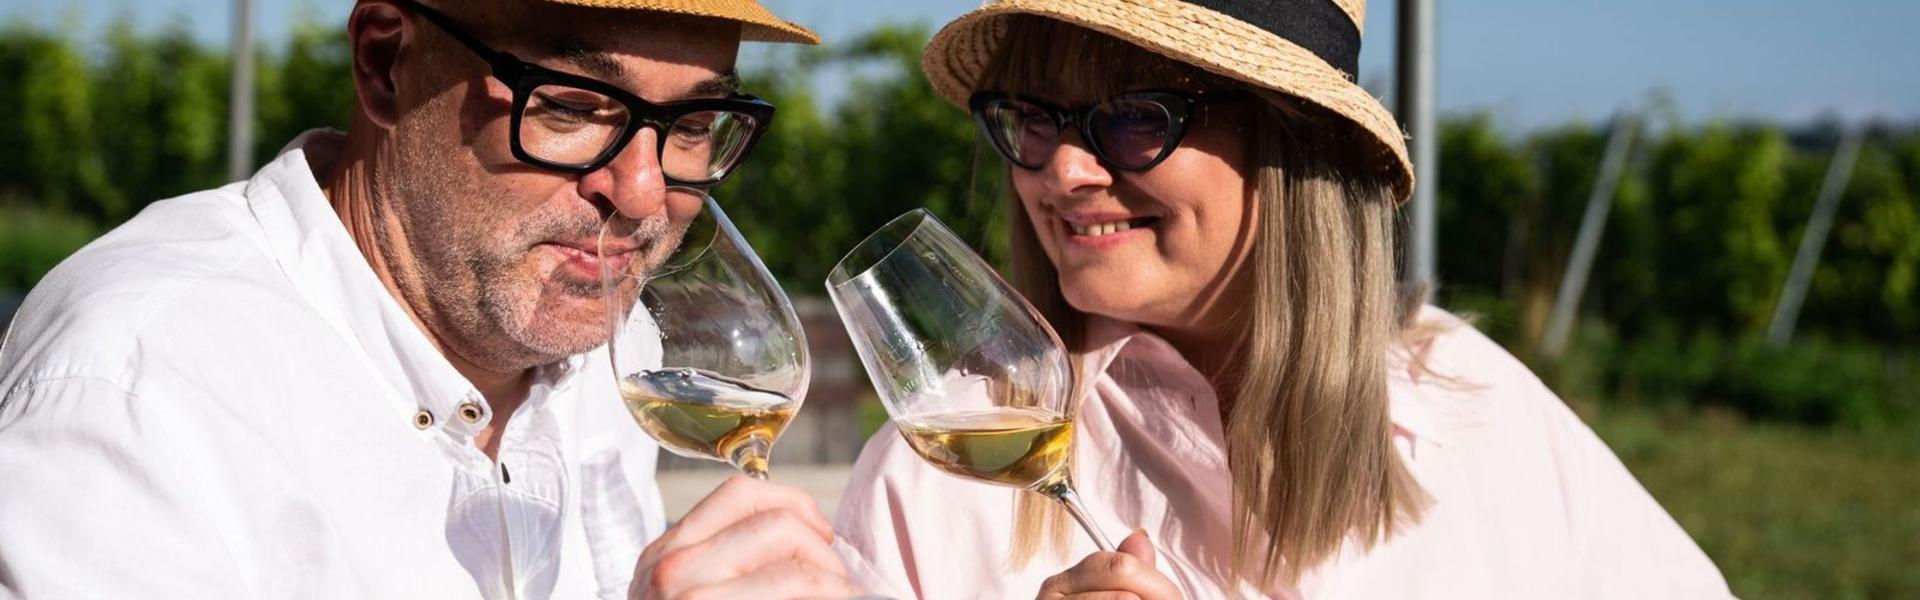 Kobieta i mężczyzna w jasnych koszulach i słomkowych kapeluszach rozkoszują się winem, w tle winnica.